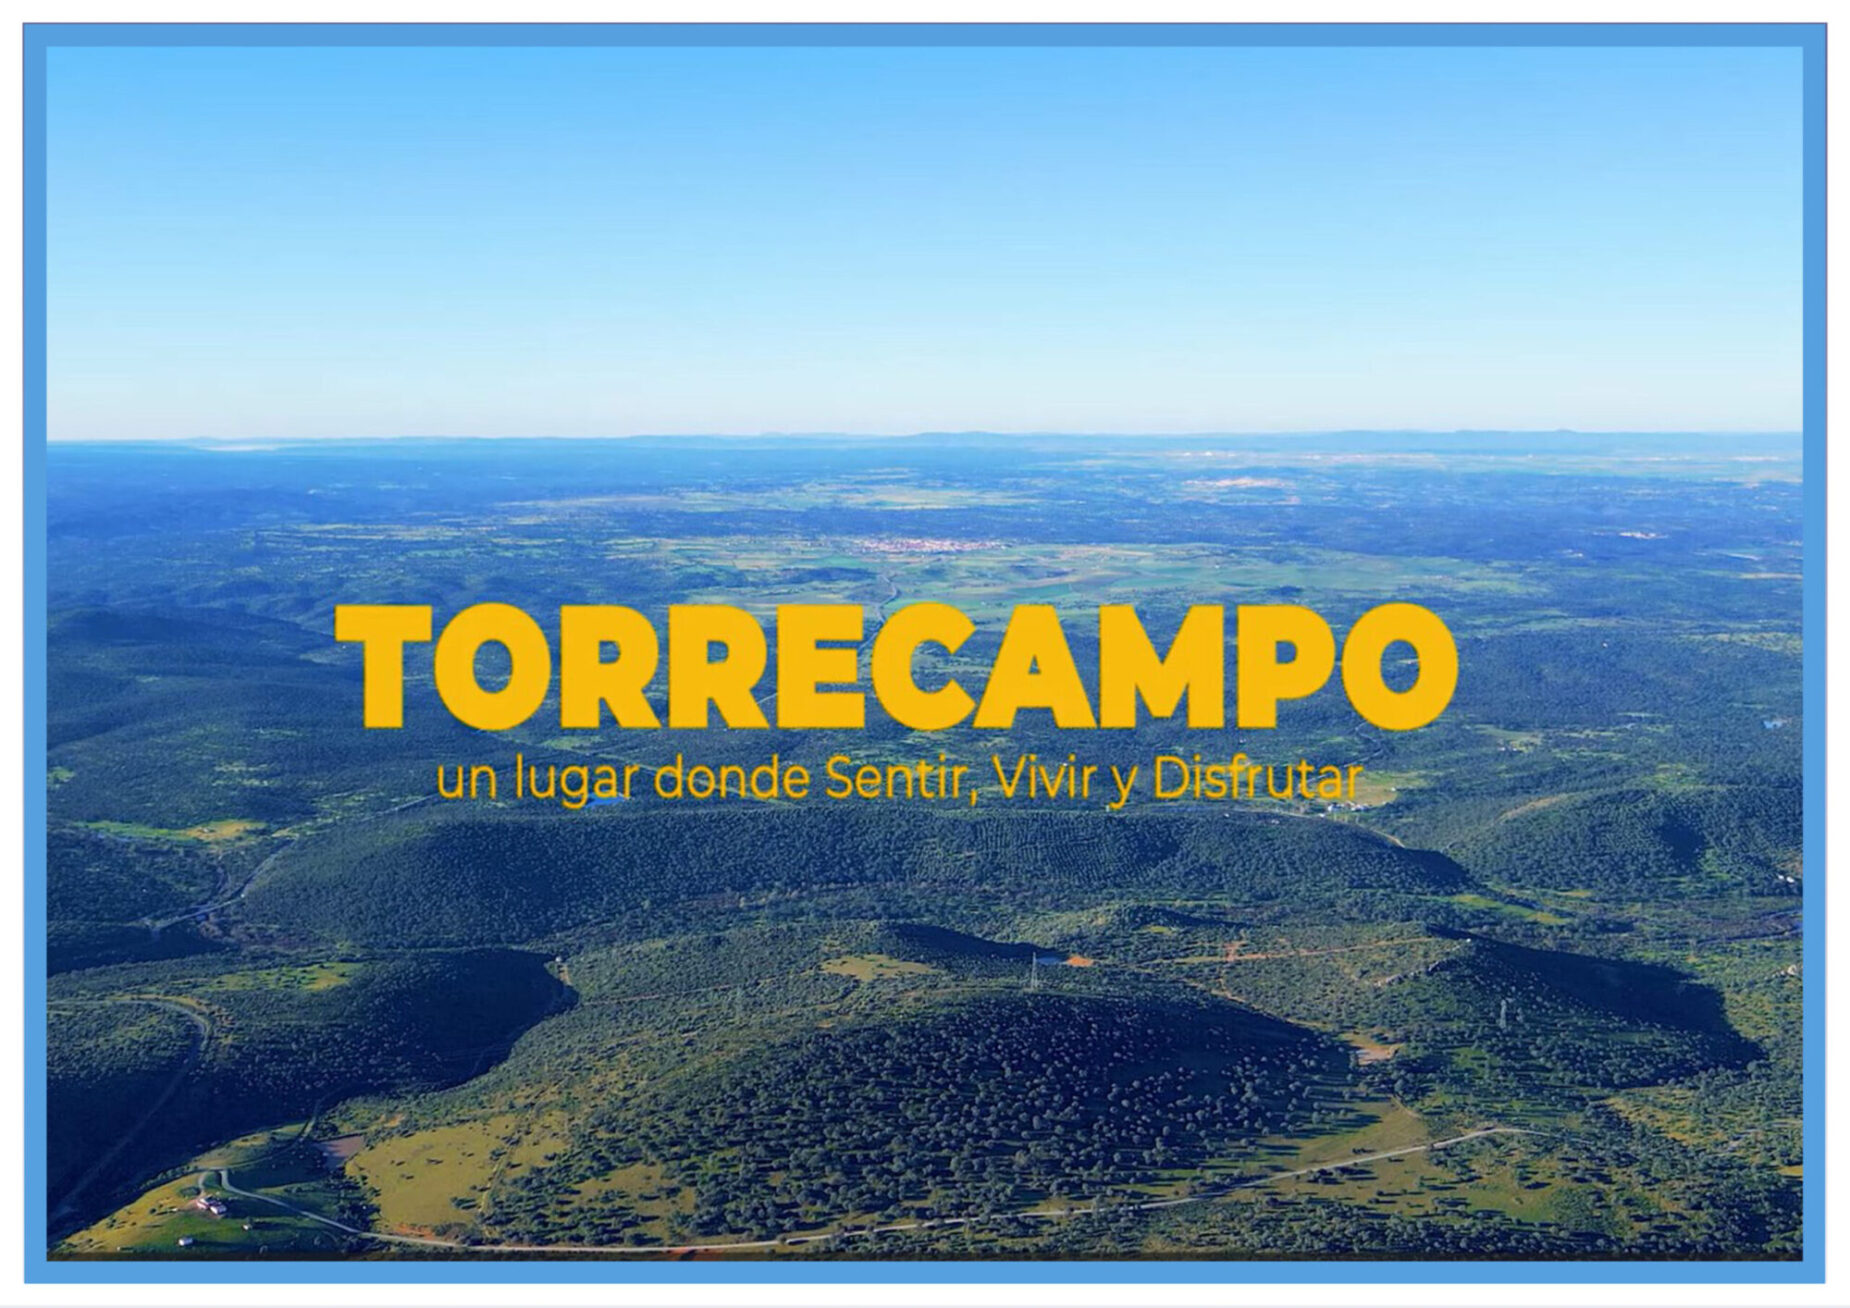 Torrecampo, un lugar donde Sentir, Vivir y Disfrutar